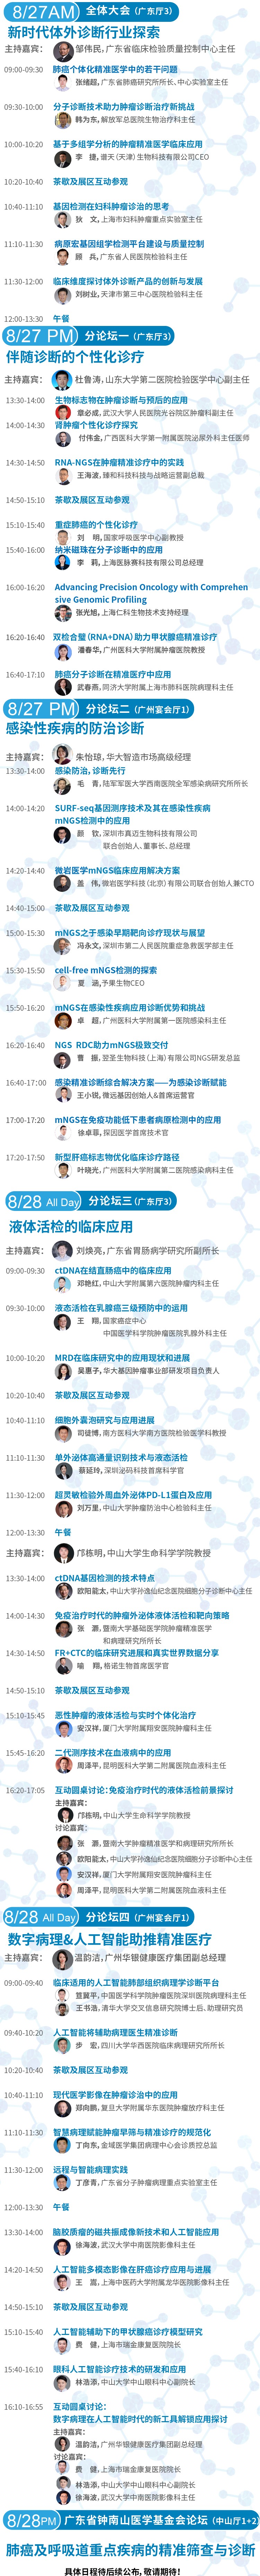 第六屆全球精準醫療（中國）峰會